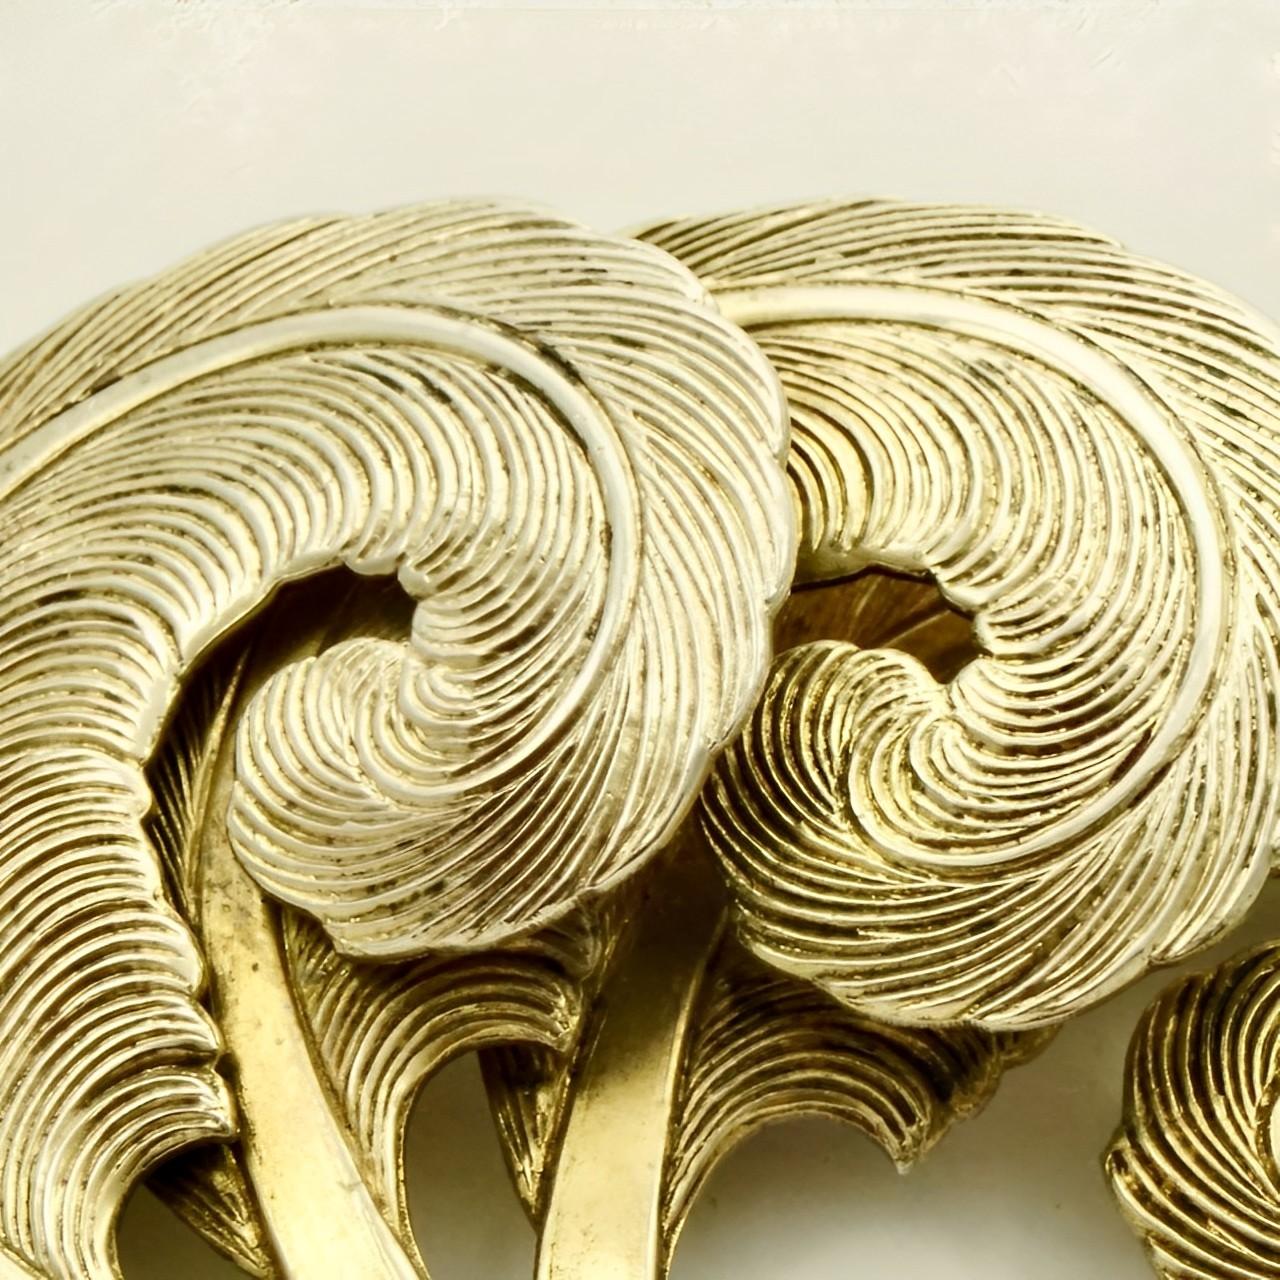 Schöne und stilvolle Art Deco Silber vergoldet drei Federn Brosche. Länge 6,5 cm / 2,5 Inch und Breite 4,8 cm / 1,8 Inch. Die Brosche ist in sehr gutem Zustand und wurde auf Silber geprüft.

Dies ist eine wunderschöne Federbrosche in einer schönen